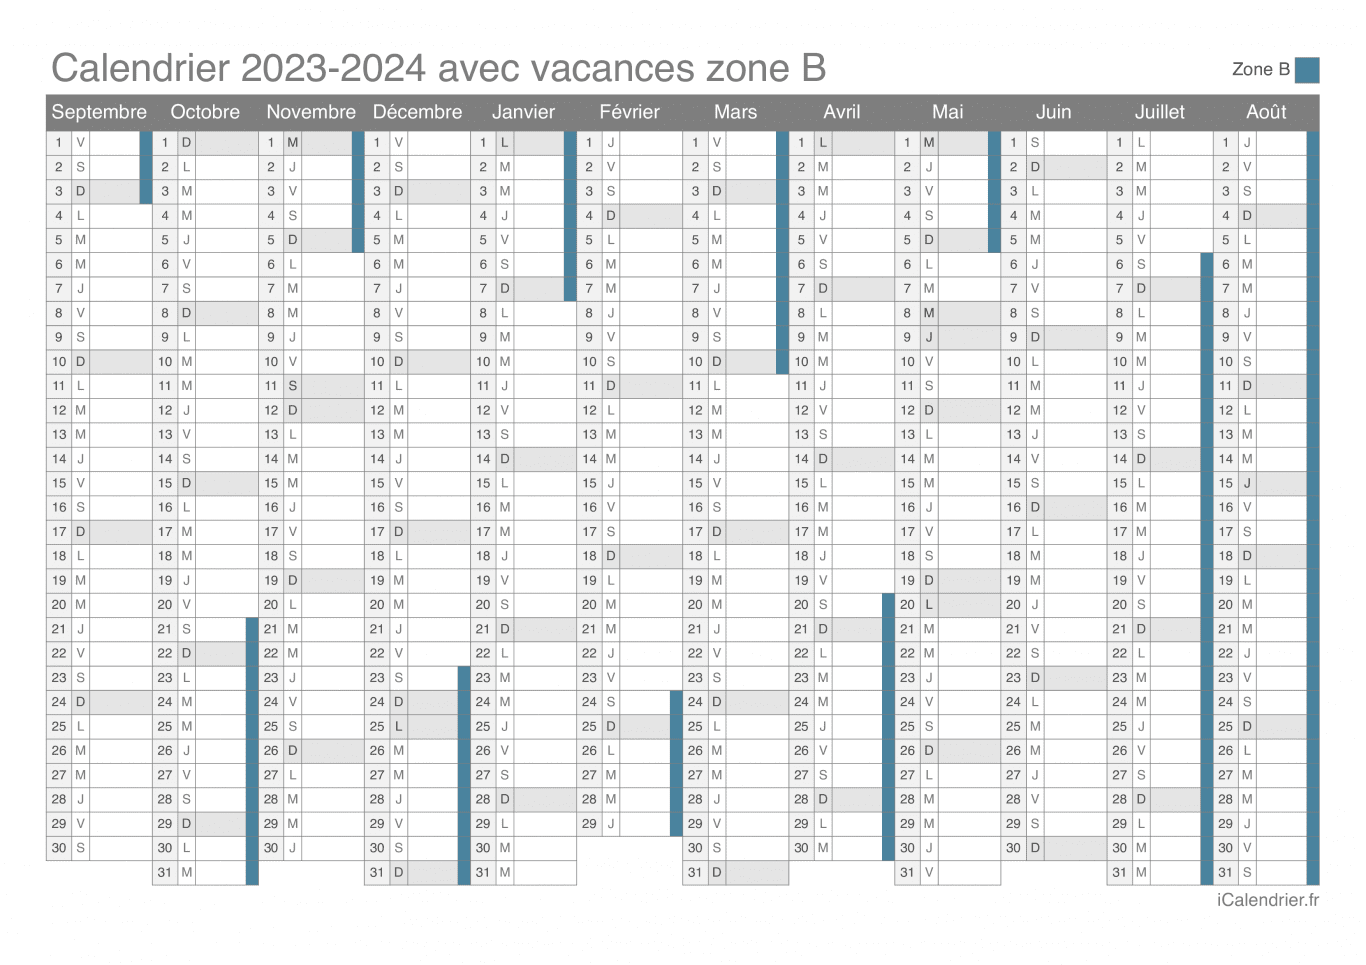 Calendrier des vacances scolaires 2023-2024 de la zone B